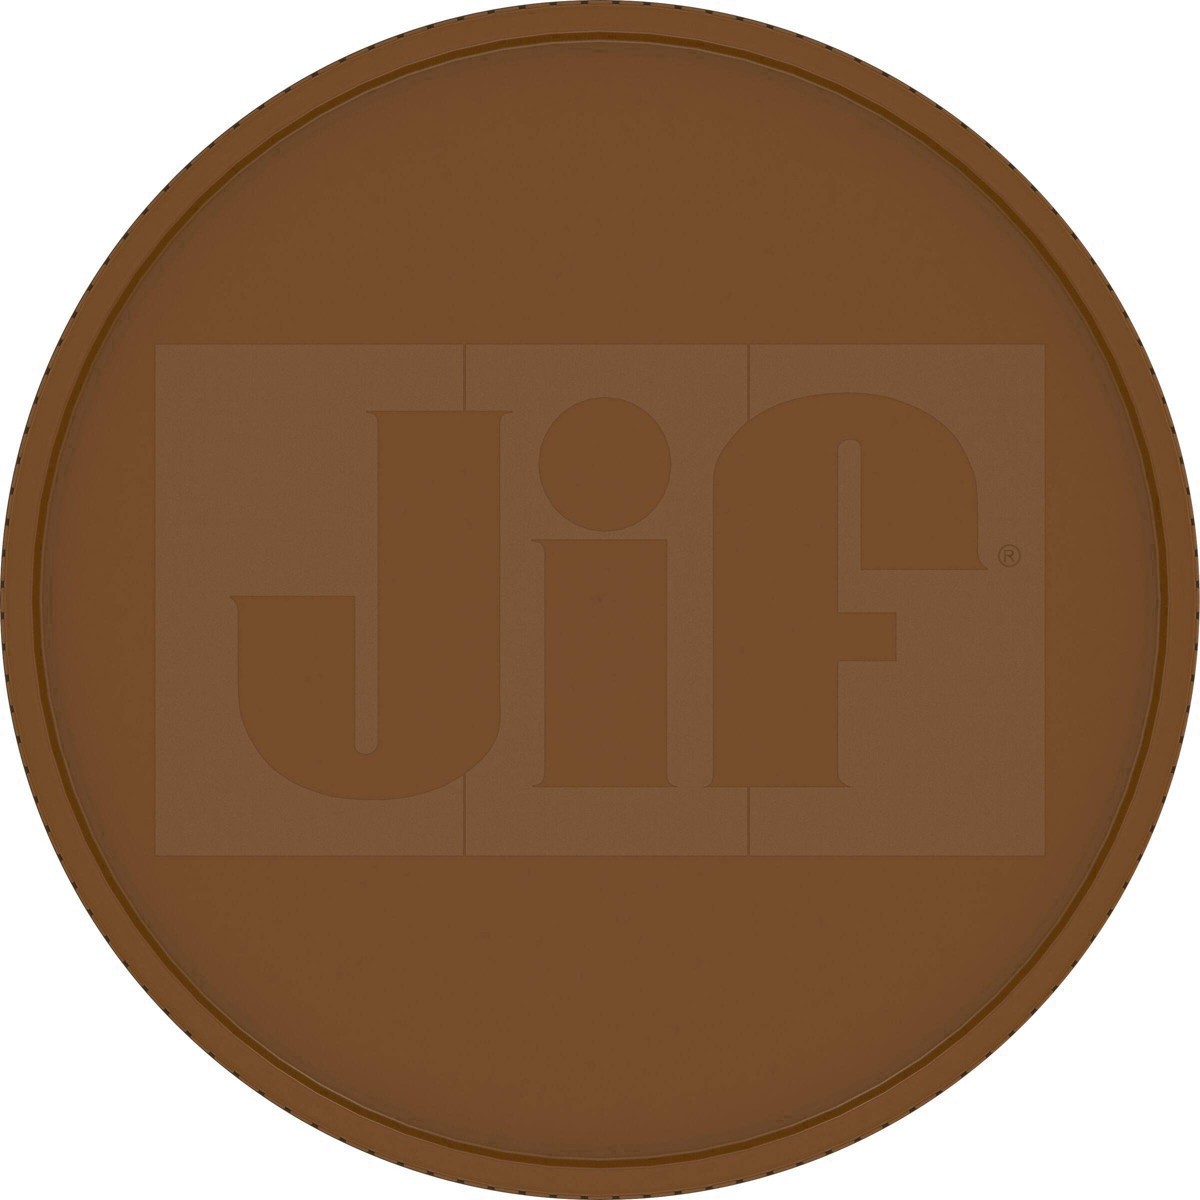 slide 30 of 41, Jif Natural Crunchy Peanut Butter, 16 oz